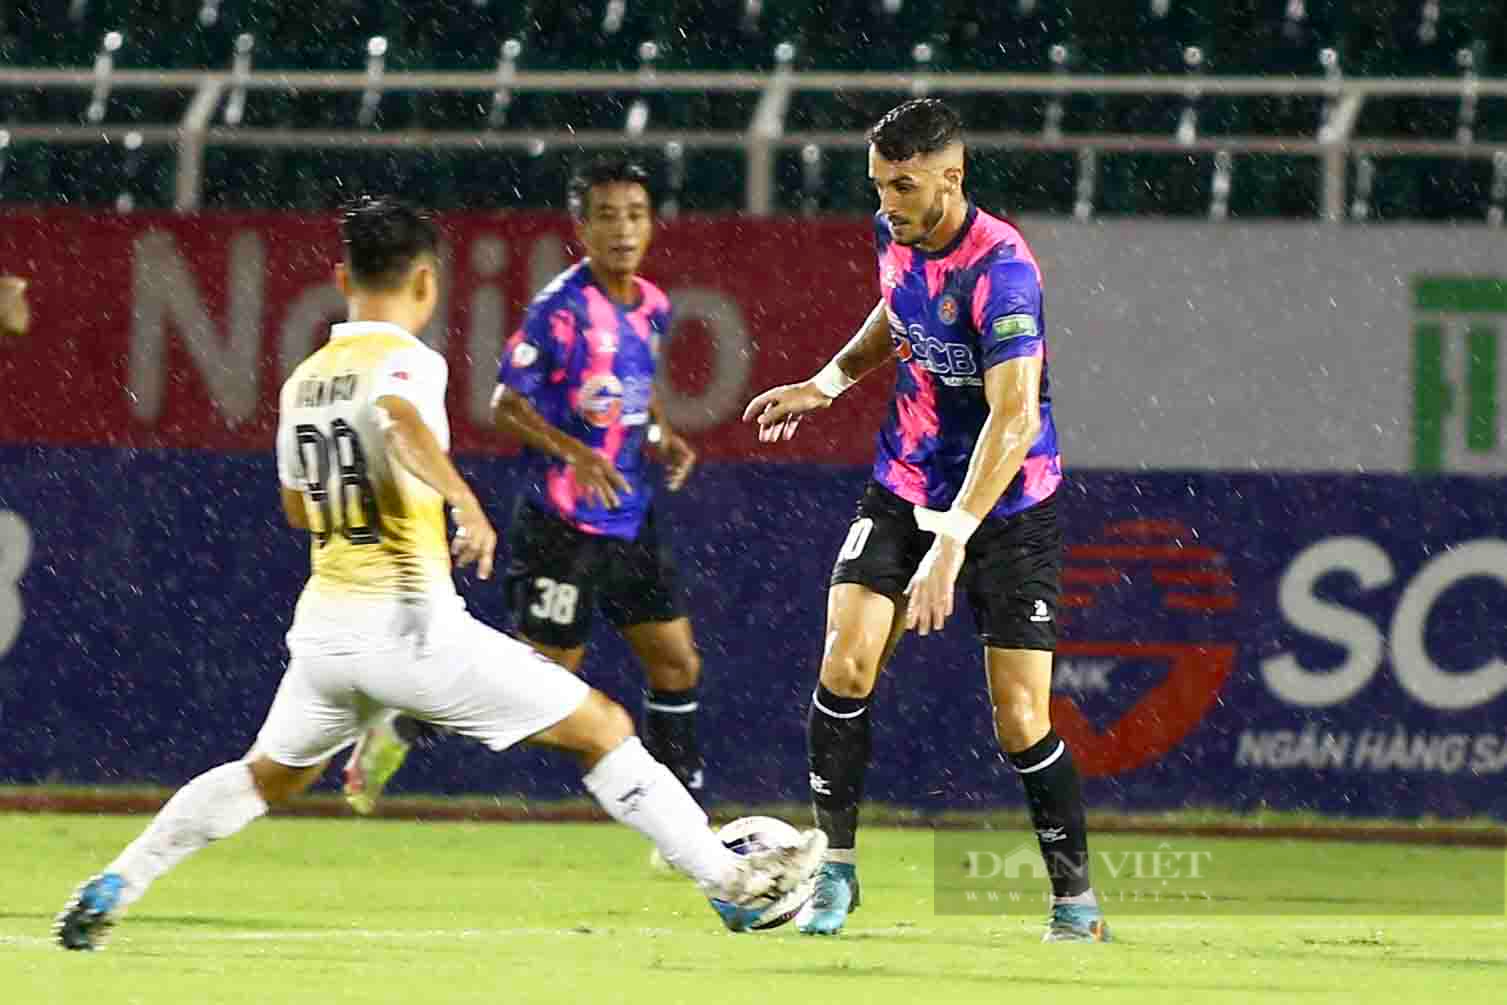 Dứt điểm vô duyên, Sài Gòn FC bỏ lỡ chiến thắng đầu tay - Ảnh 15.